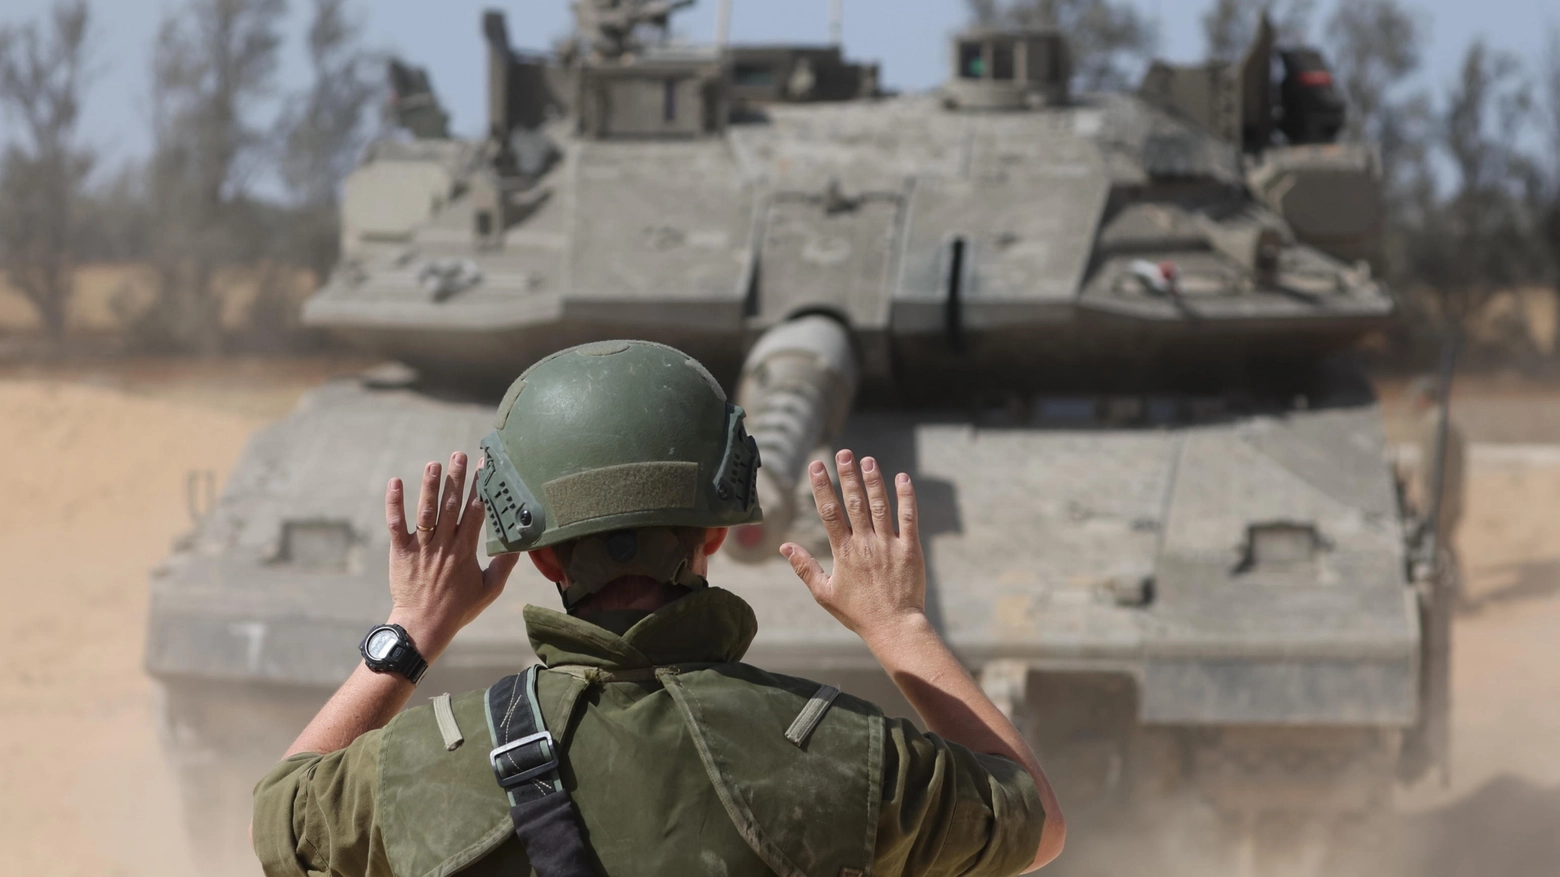 L’Idf ha dato avvio al trasferimento di 100.000 palestinesi. In migliaia lasciano Rafah est. “Bombardati due quartieri”. Appello Anp agli Usa perché impediscano “il massacro”. Telefonata tra Biden e il premier israeliano